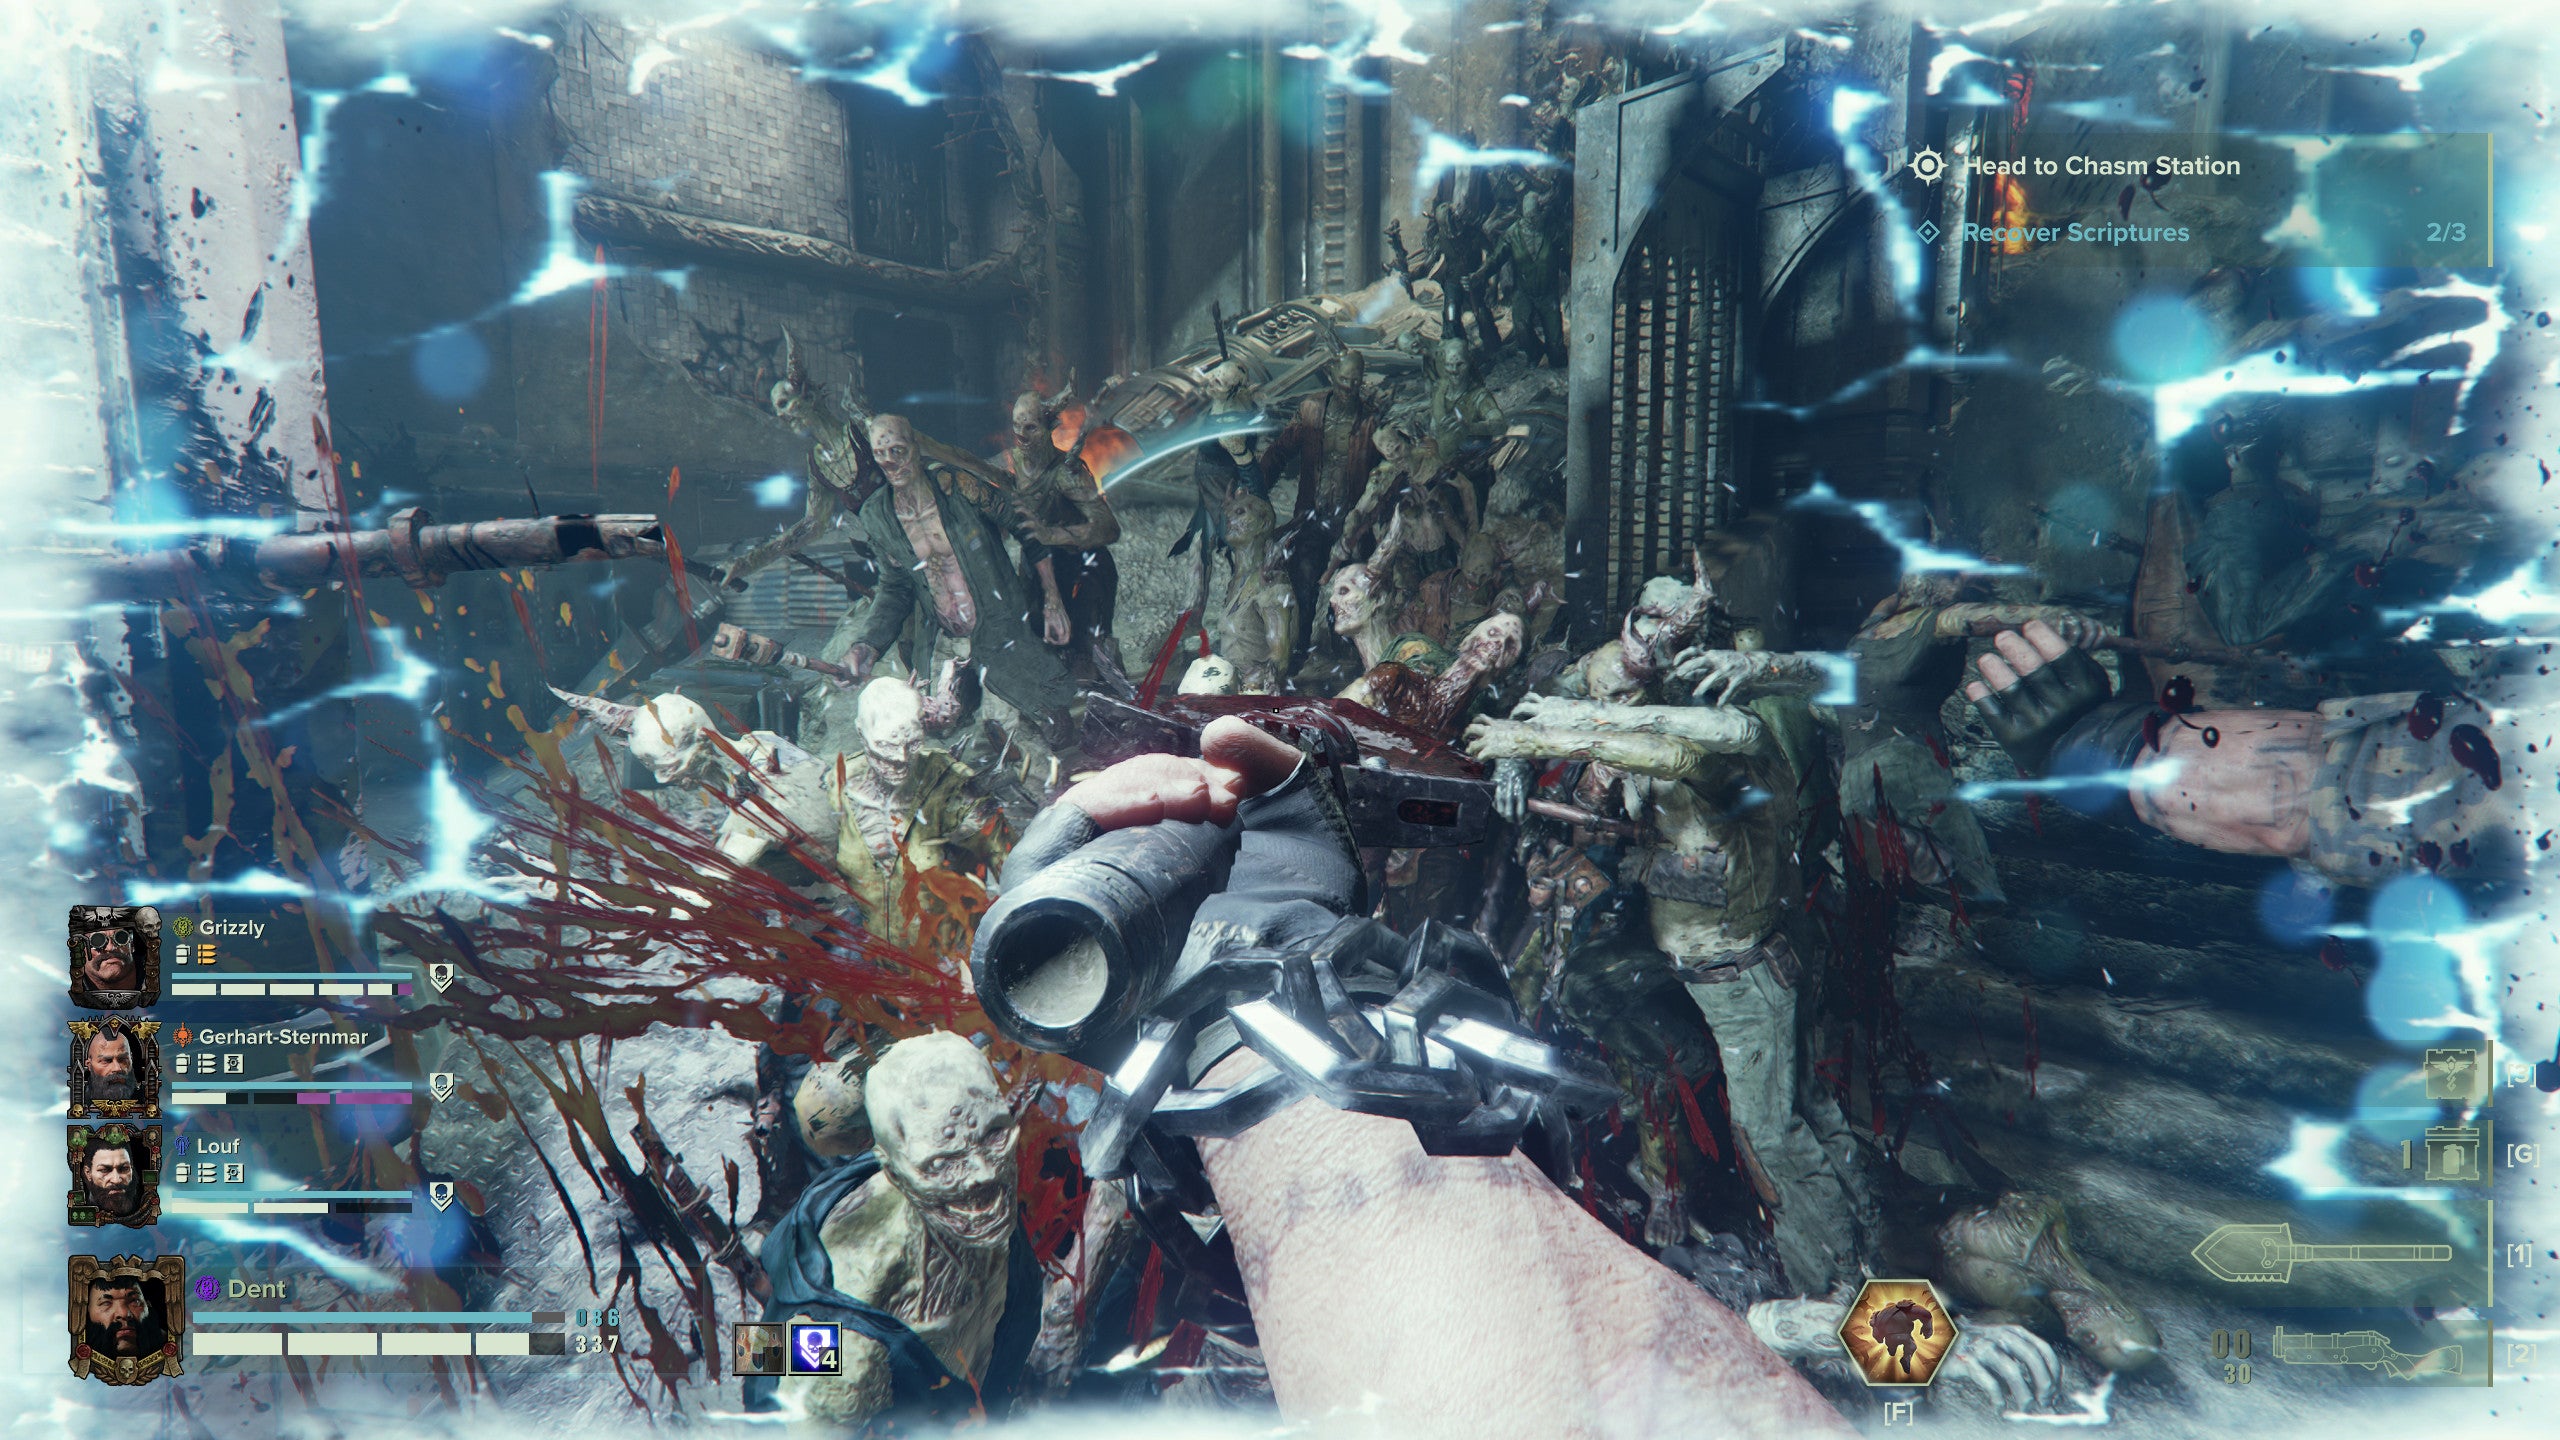 Cutting through hordes in a Warhammer 40,000: Darktide screenshot.